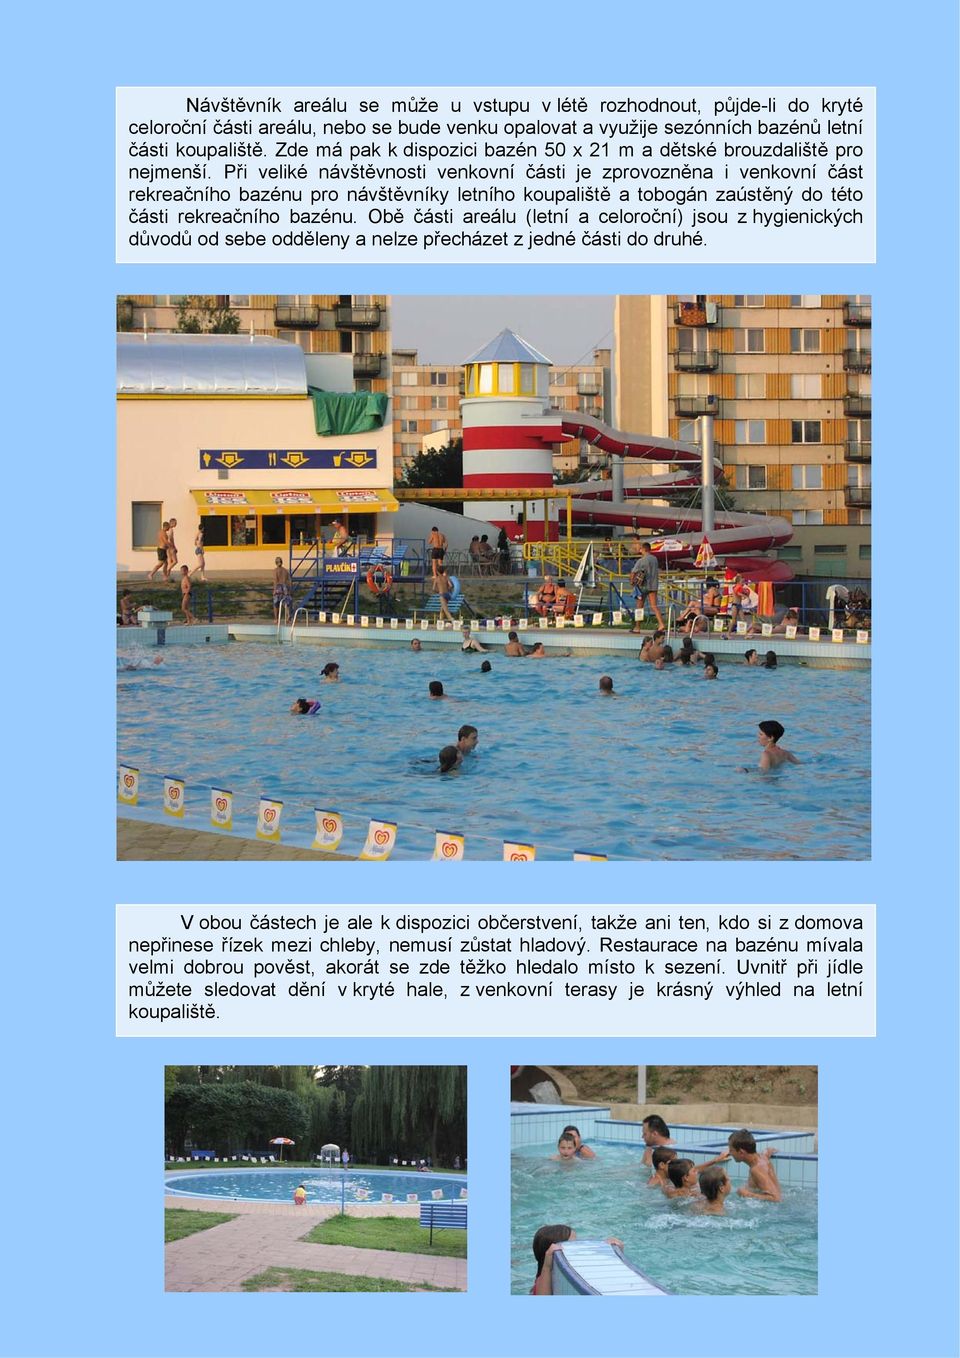 Při veliké návštěvnosti venkovní části je zprovozněna i venkovní část rekreačního bazénu pro návštěvníky letního koupaliště a tobogán zaústěný do této části rekreačního bazénu.